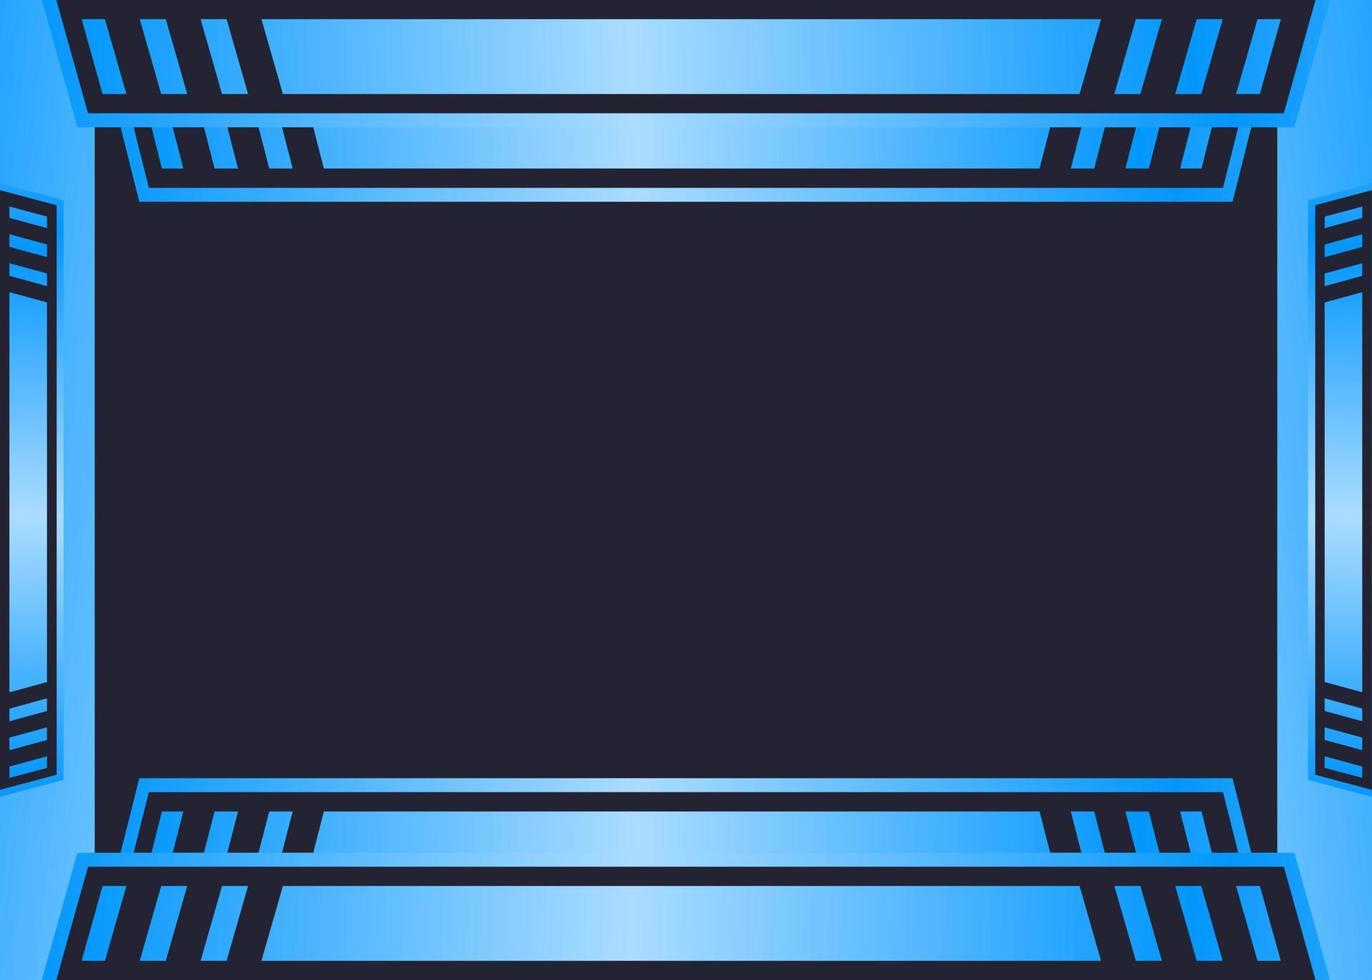 Gaming-Hintergrund-Vektor-Illustration blaue Farbe vektor